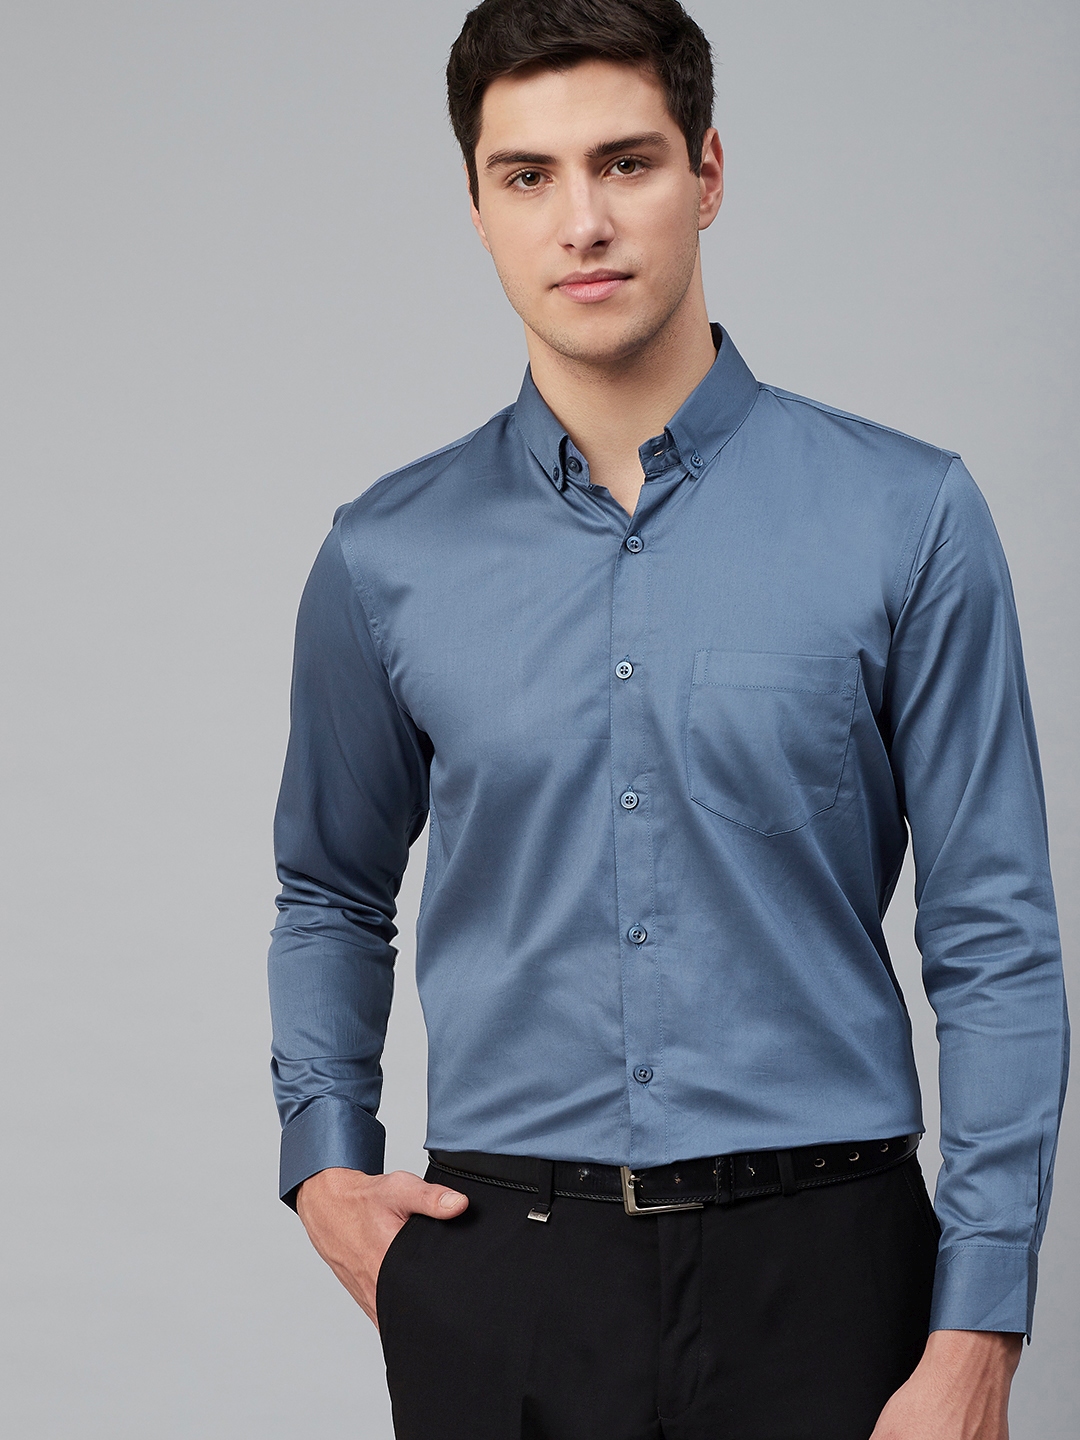 Buy DENNISON Men Blue Comfort Formal Shirt - Shirts for Men 11530474 ...